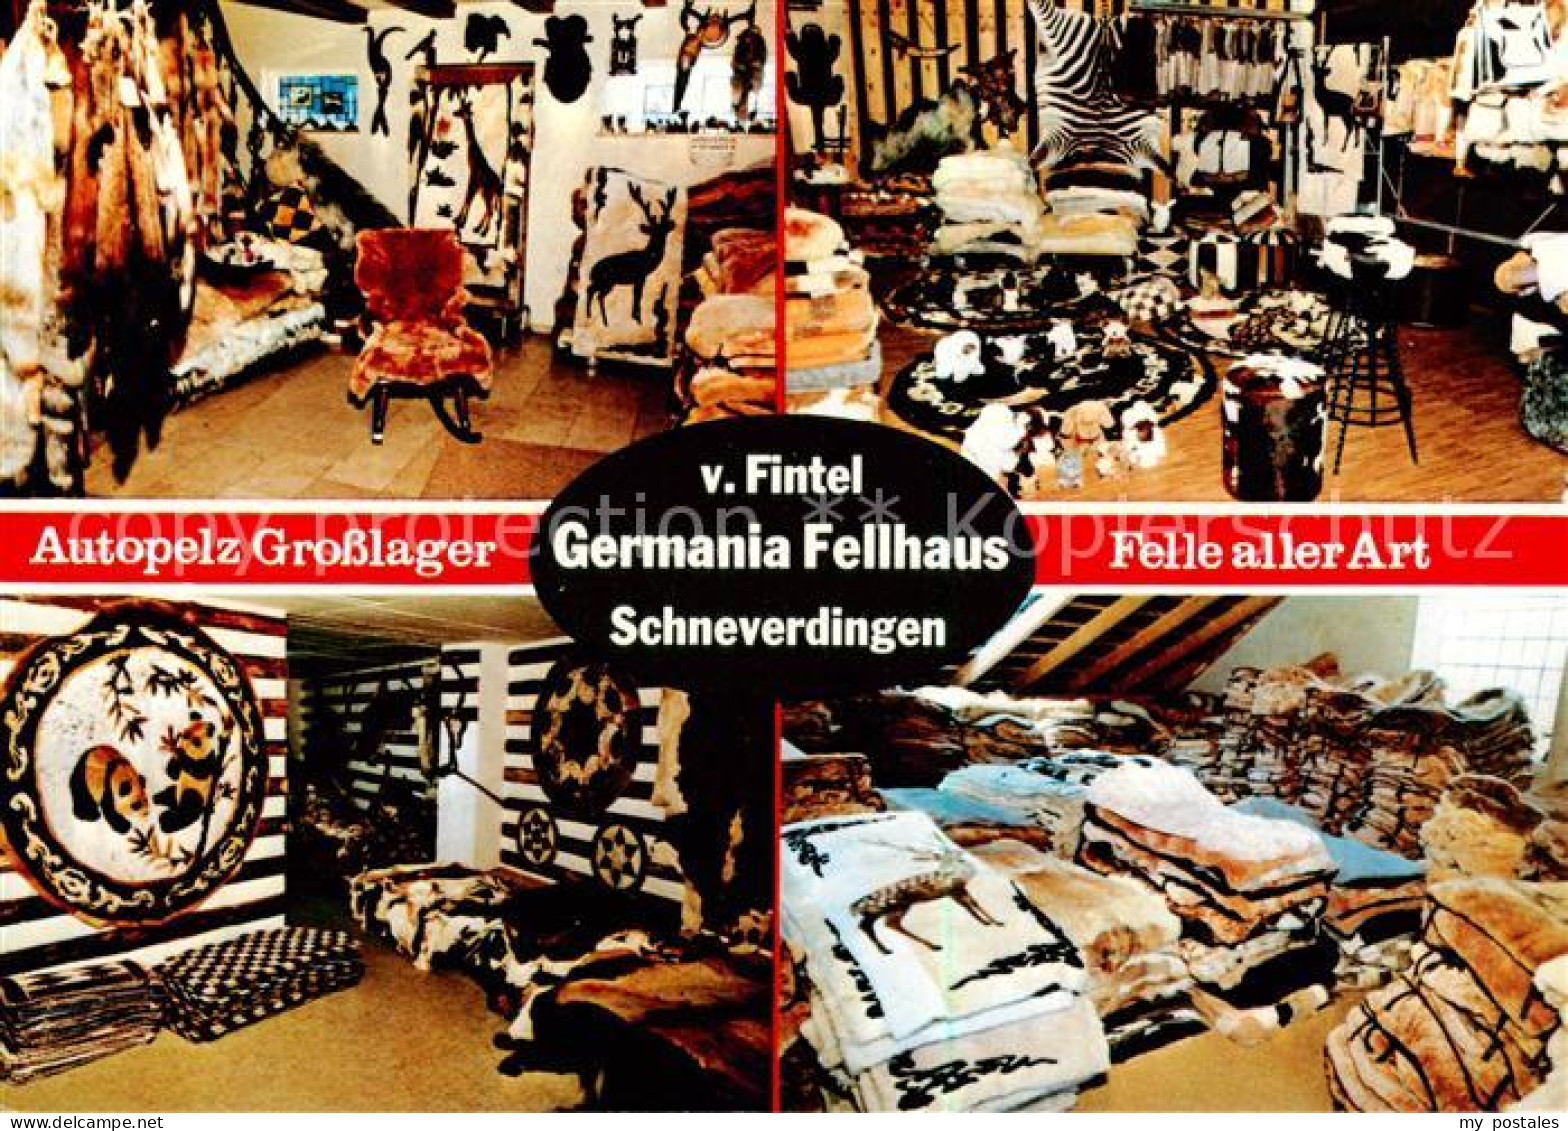 73797106 Schneverdingen Germania Fellhaus V Fintel Autopelz Grosslager Schneverd - Schneverdingen